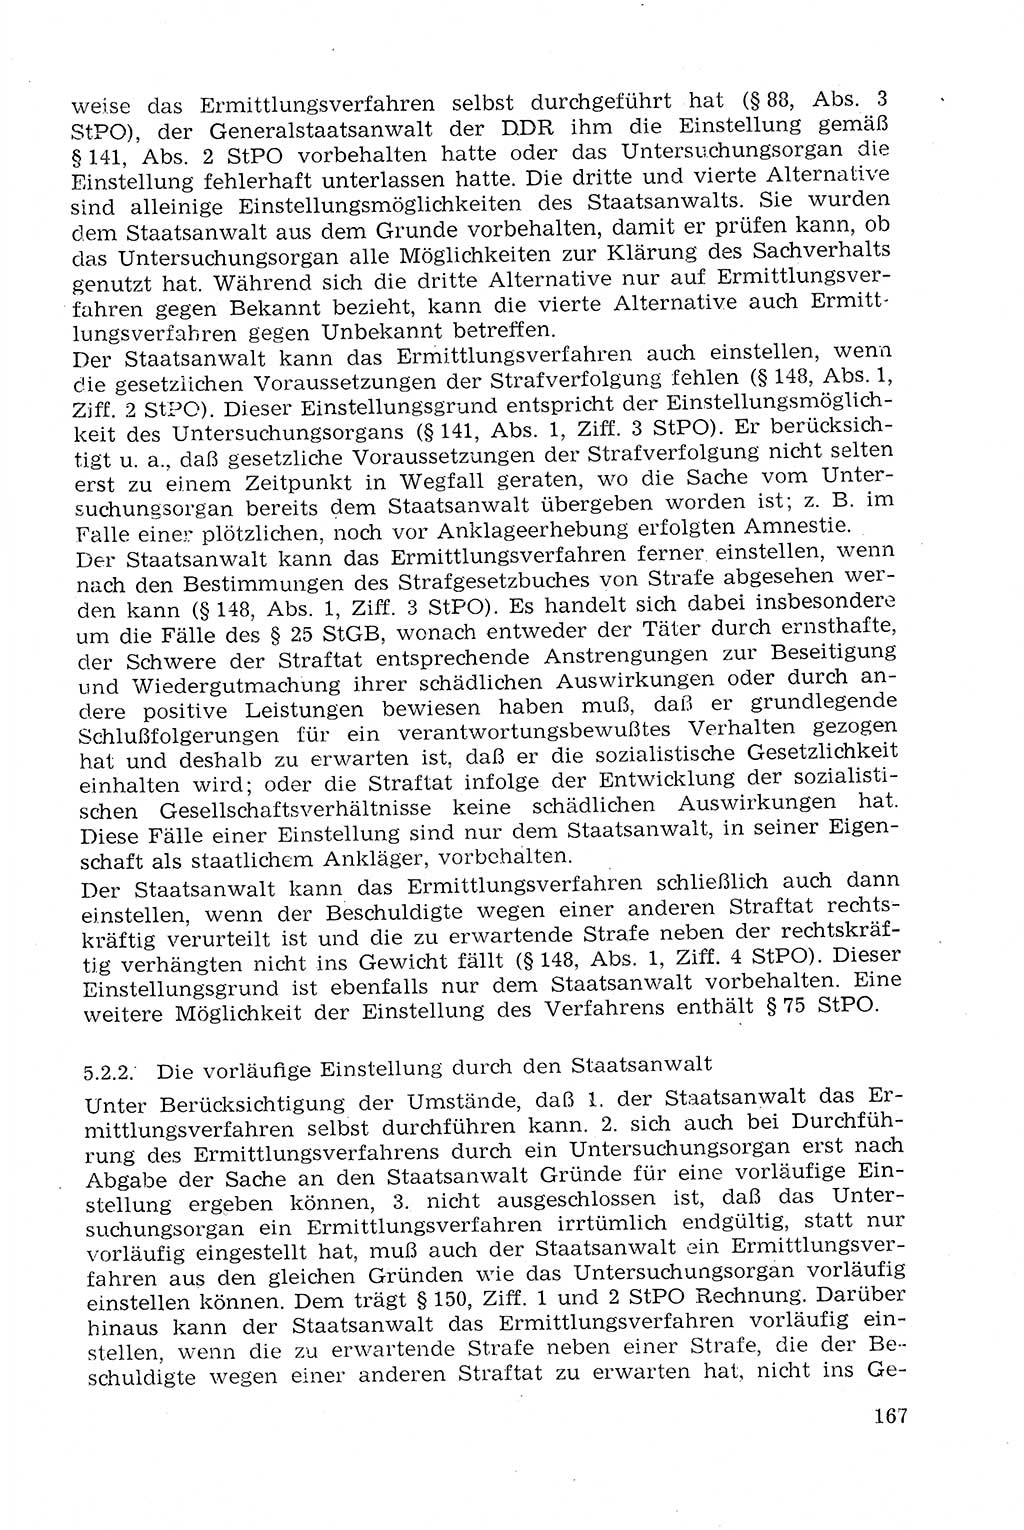 Strafprozeßrecht der DDR (Deutsche Demokratische Republik), Lehrmaterial 1969, Seite 167 (Strafprozeßr. DDR Lehrmat. 1969, S. 167)